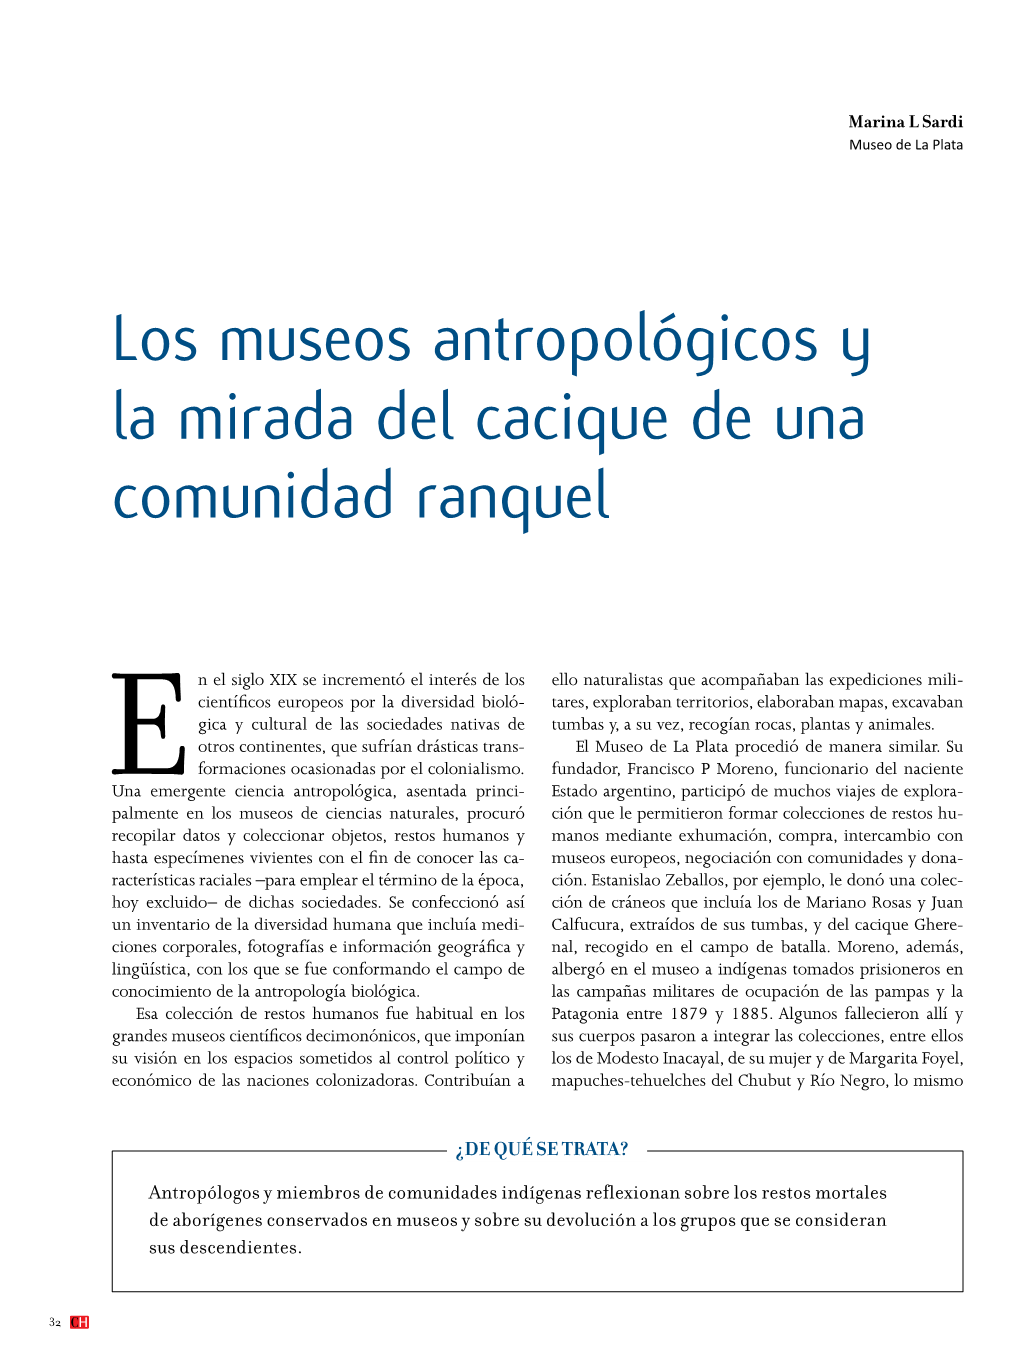 Los Museos Antropológicos Y La Mirada Del Cacique De Una Comunidad Ranquel